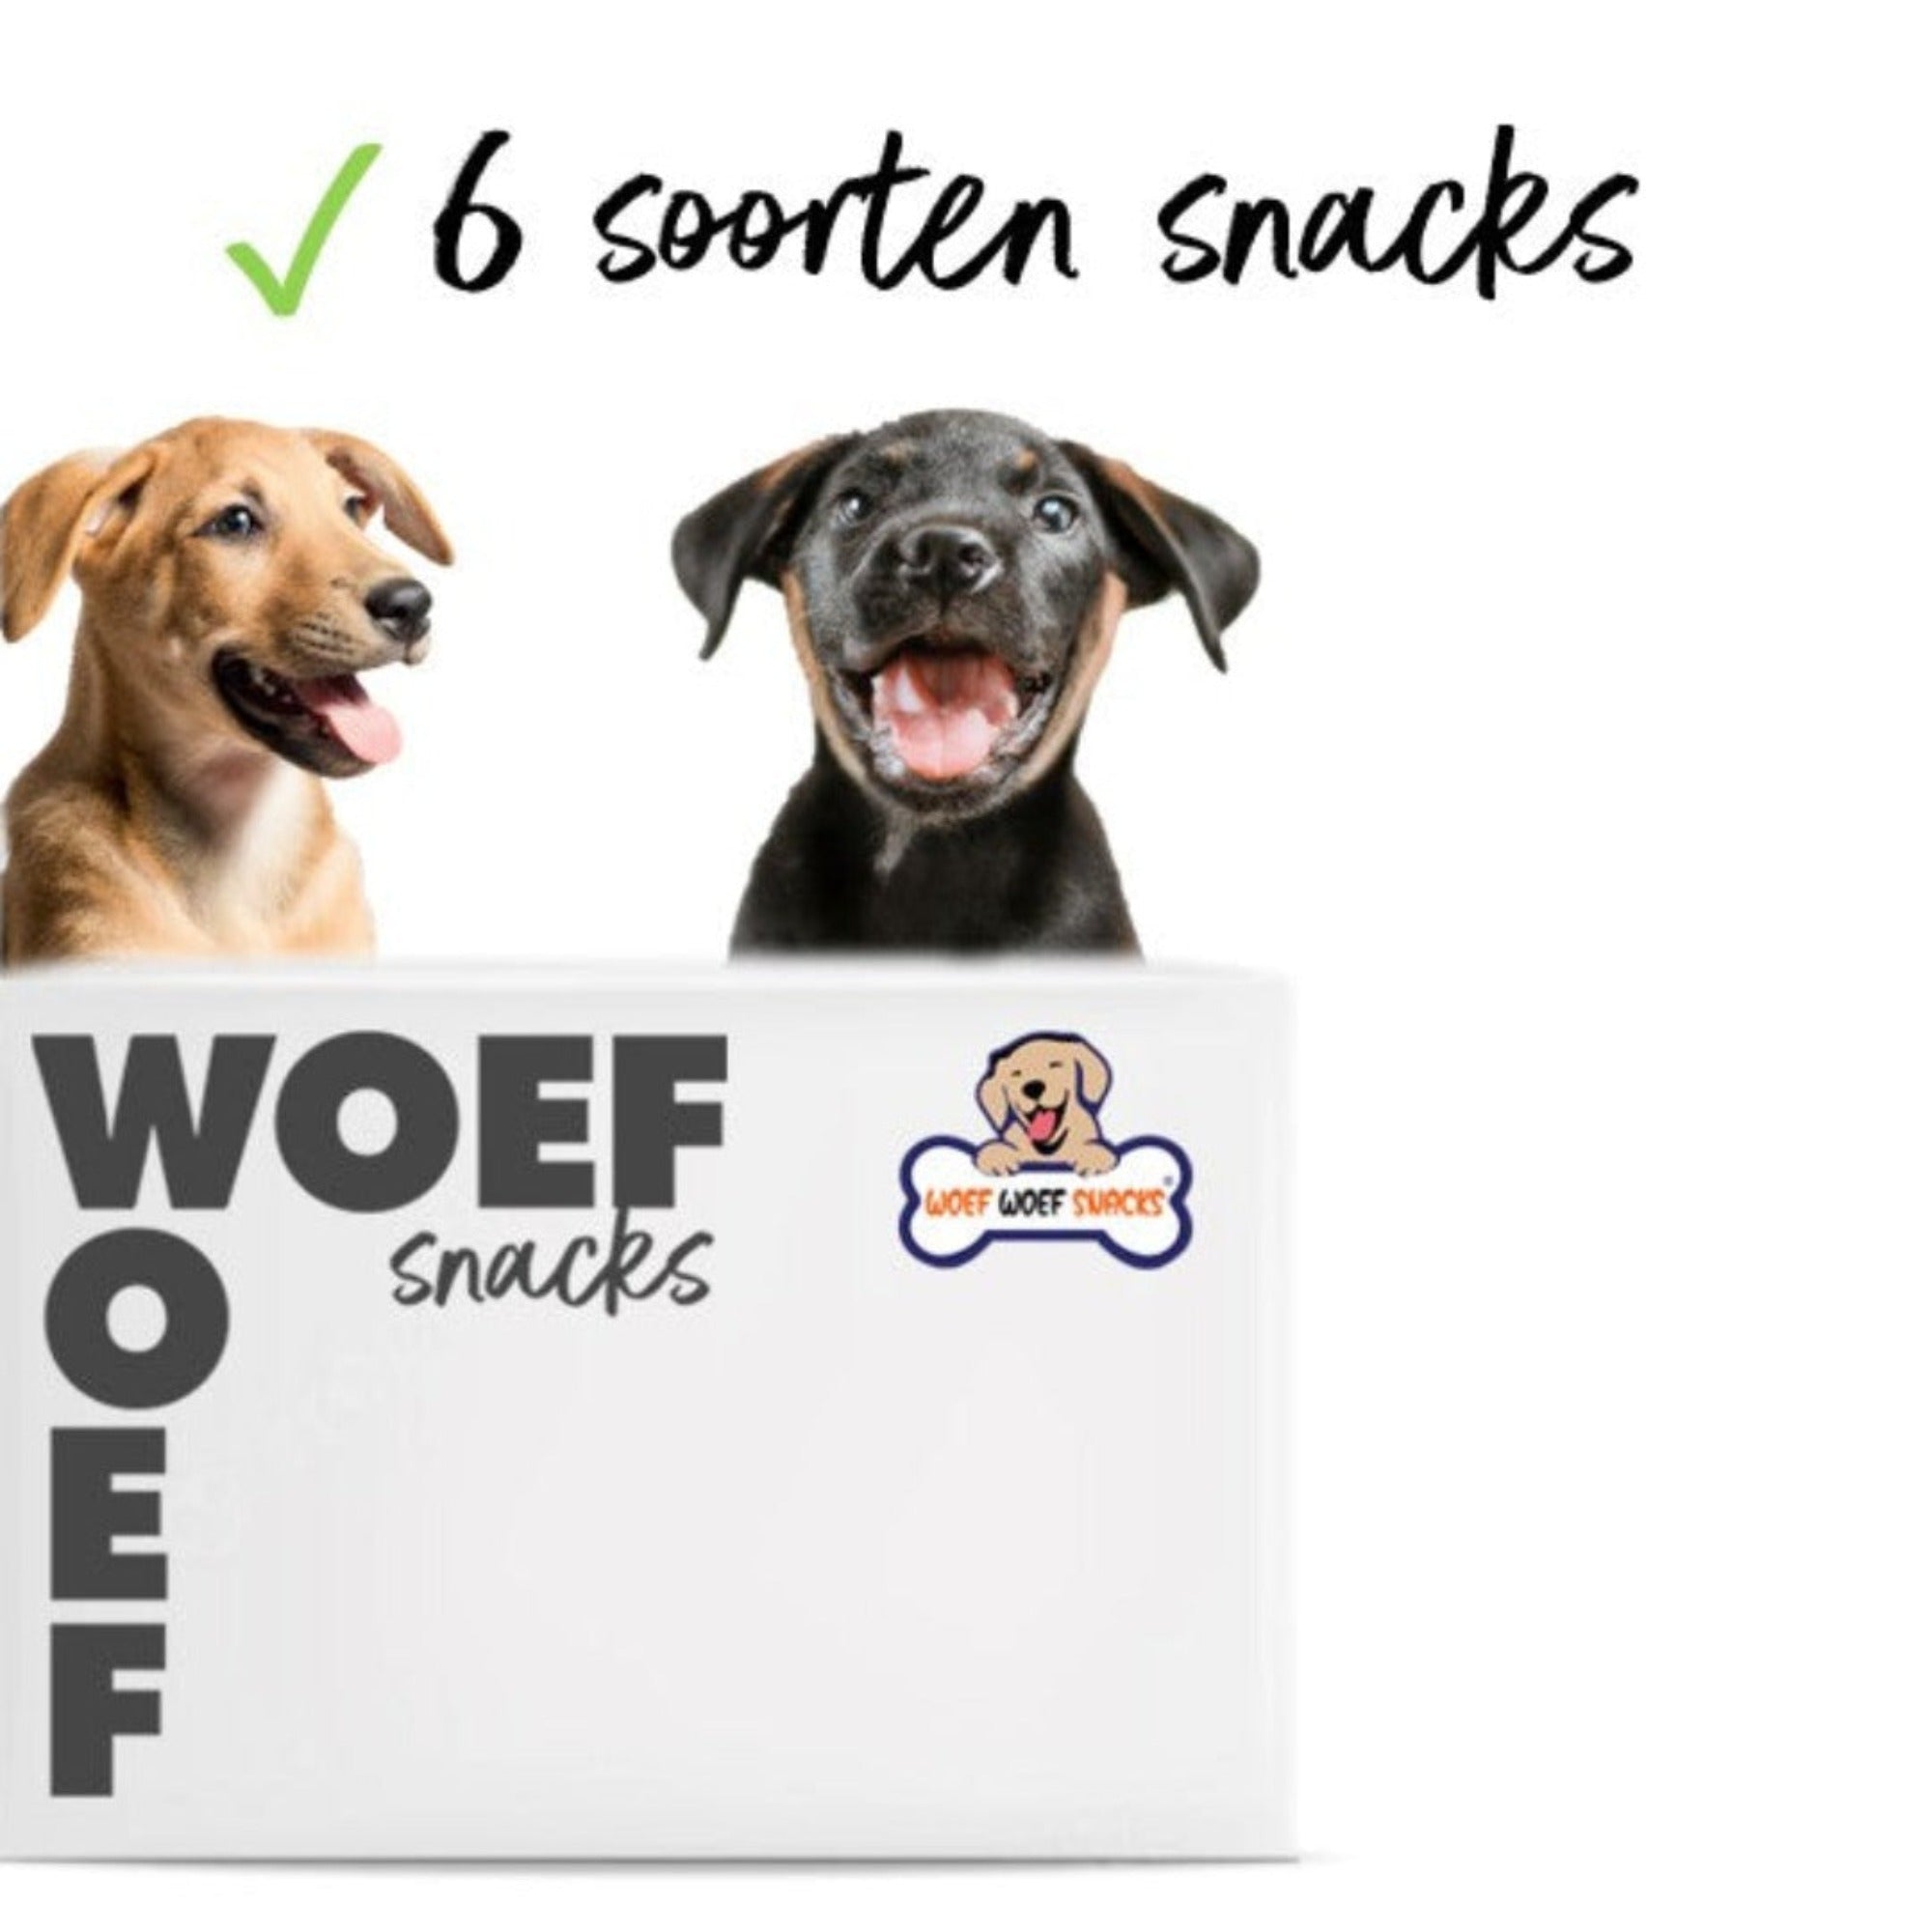 De doos van Woef Woef Snacks is te zien. Op de achtergrond twee puppy's. En er staat dat de snackbox 6 soorten snacks bevat.